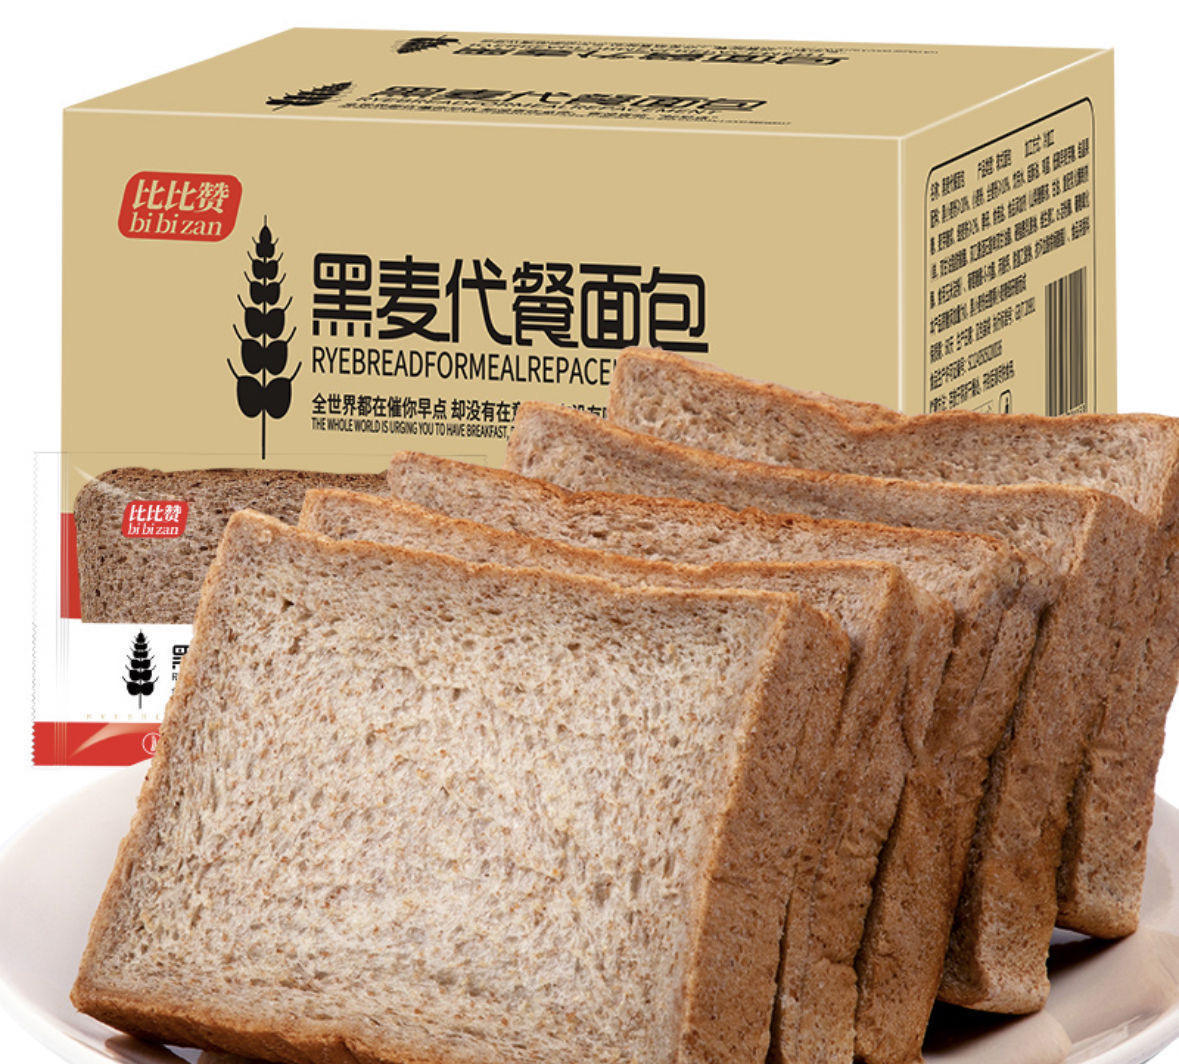 比比赞 黑麦全麦面包整箱 400g 5.7元包邮(首购4.7元)